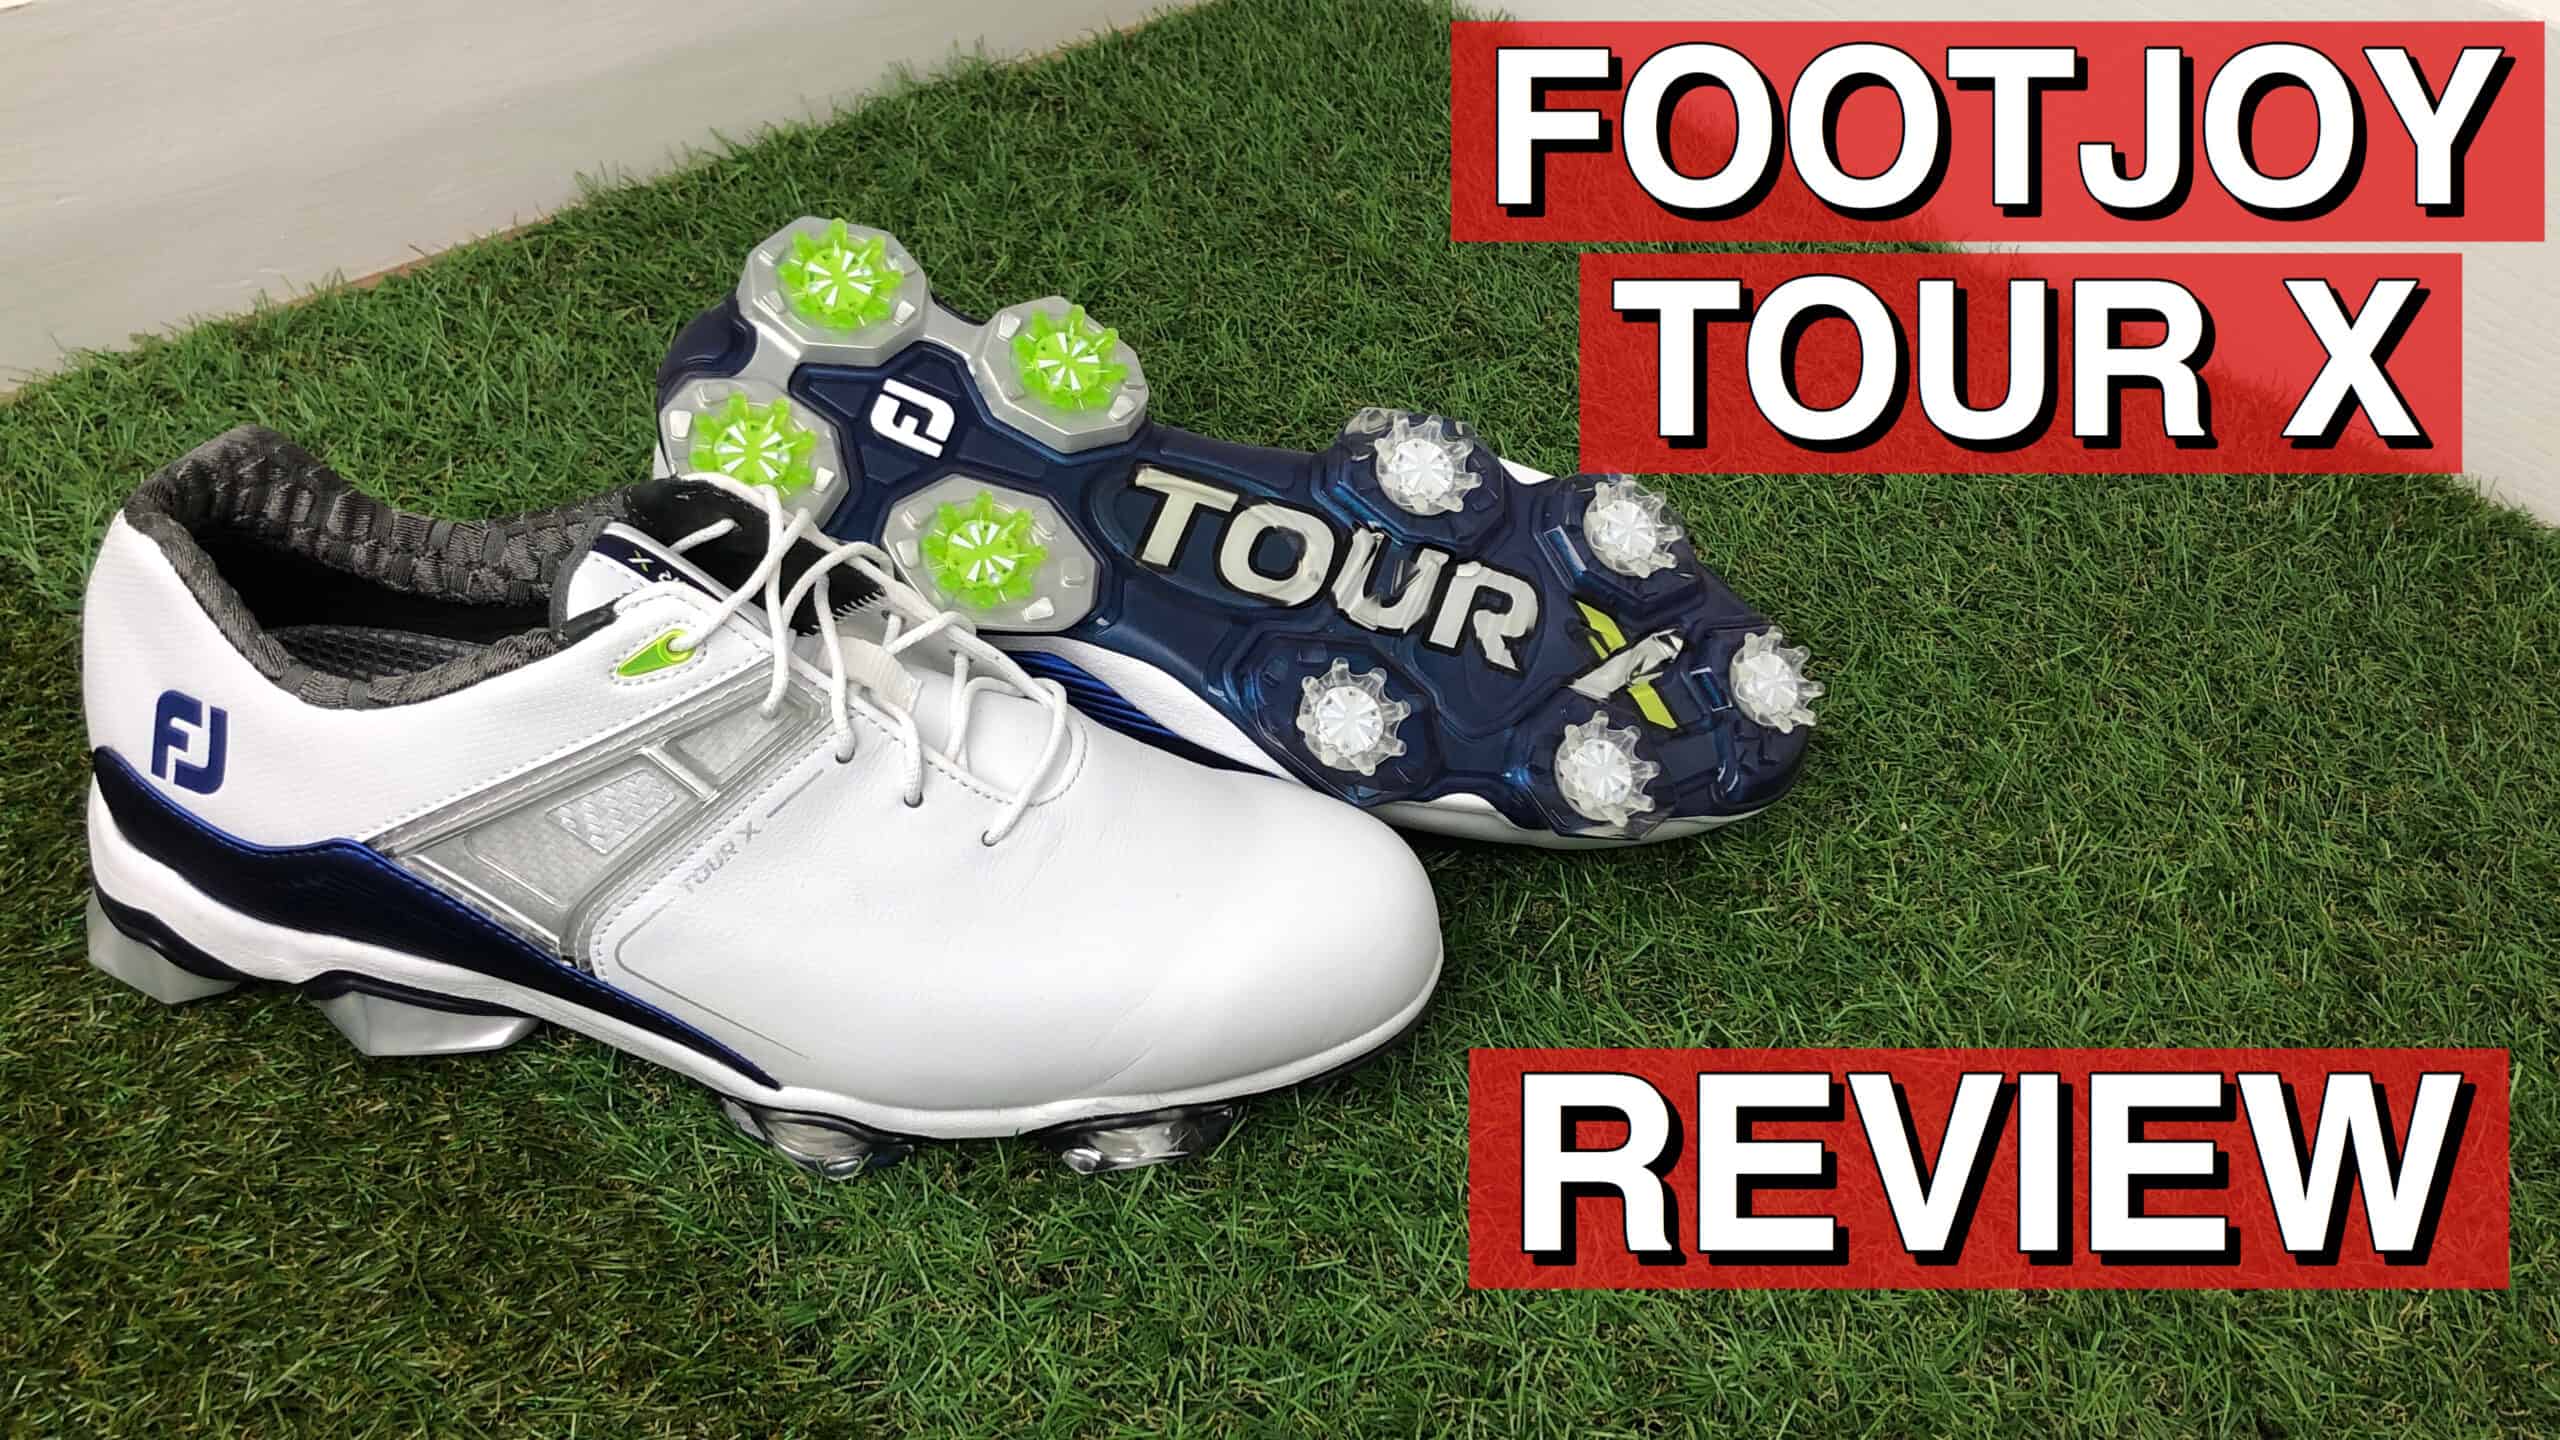 Footjoy Tour X Golf Shoes Review